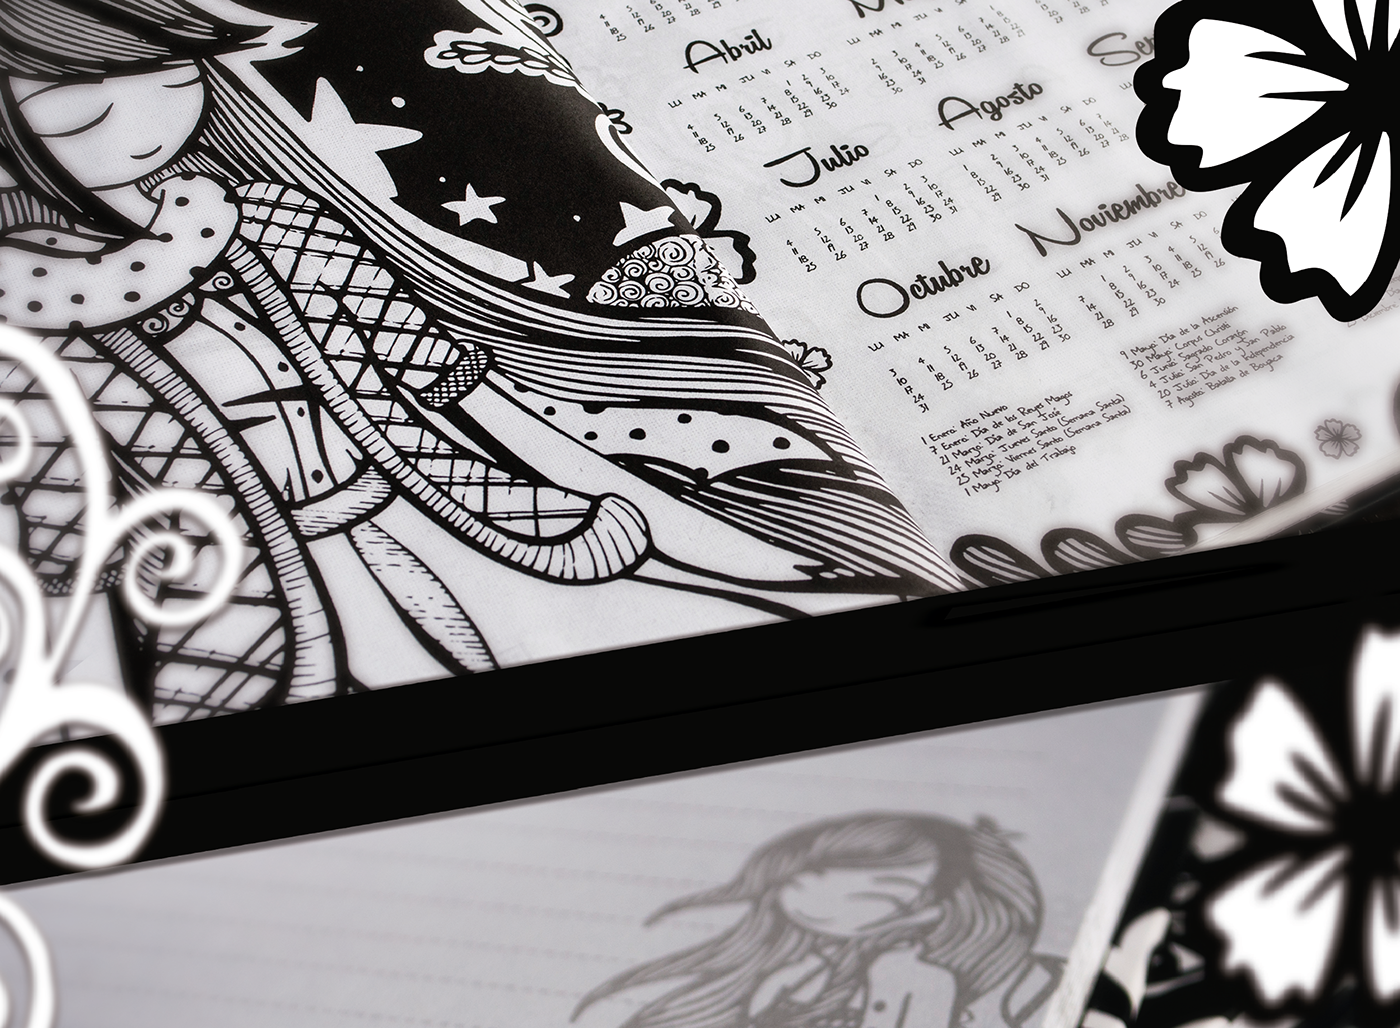 doodle agenda Cuaderno ilustracion dibujo editorial libreta blanco y negro Diseño editorial libros draw Fotografia diseño font tipografia